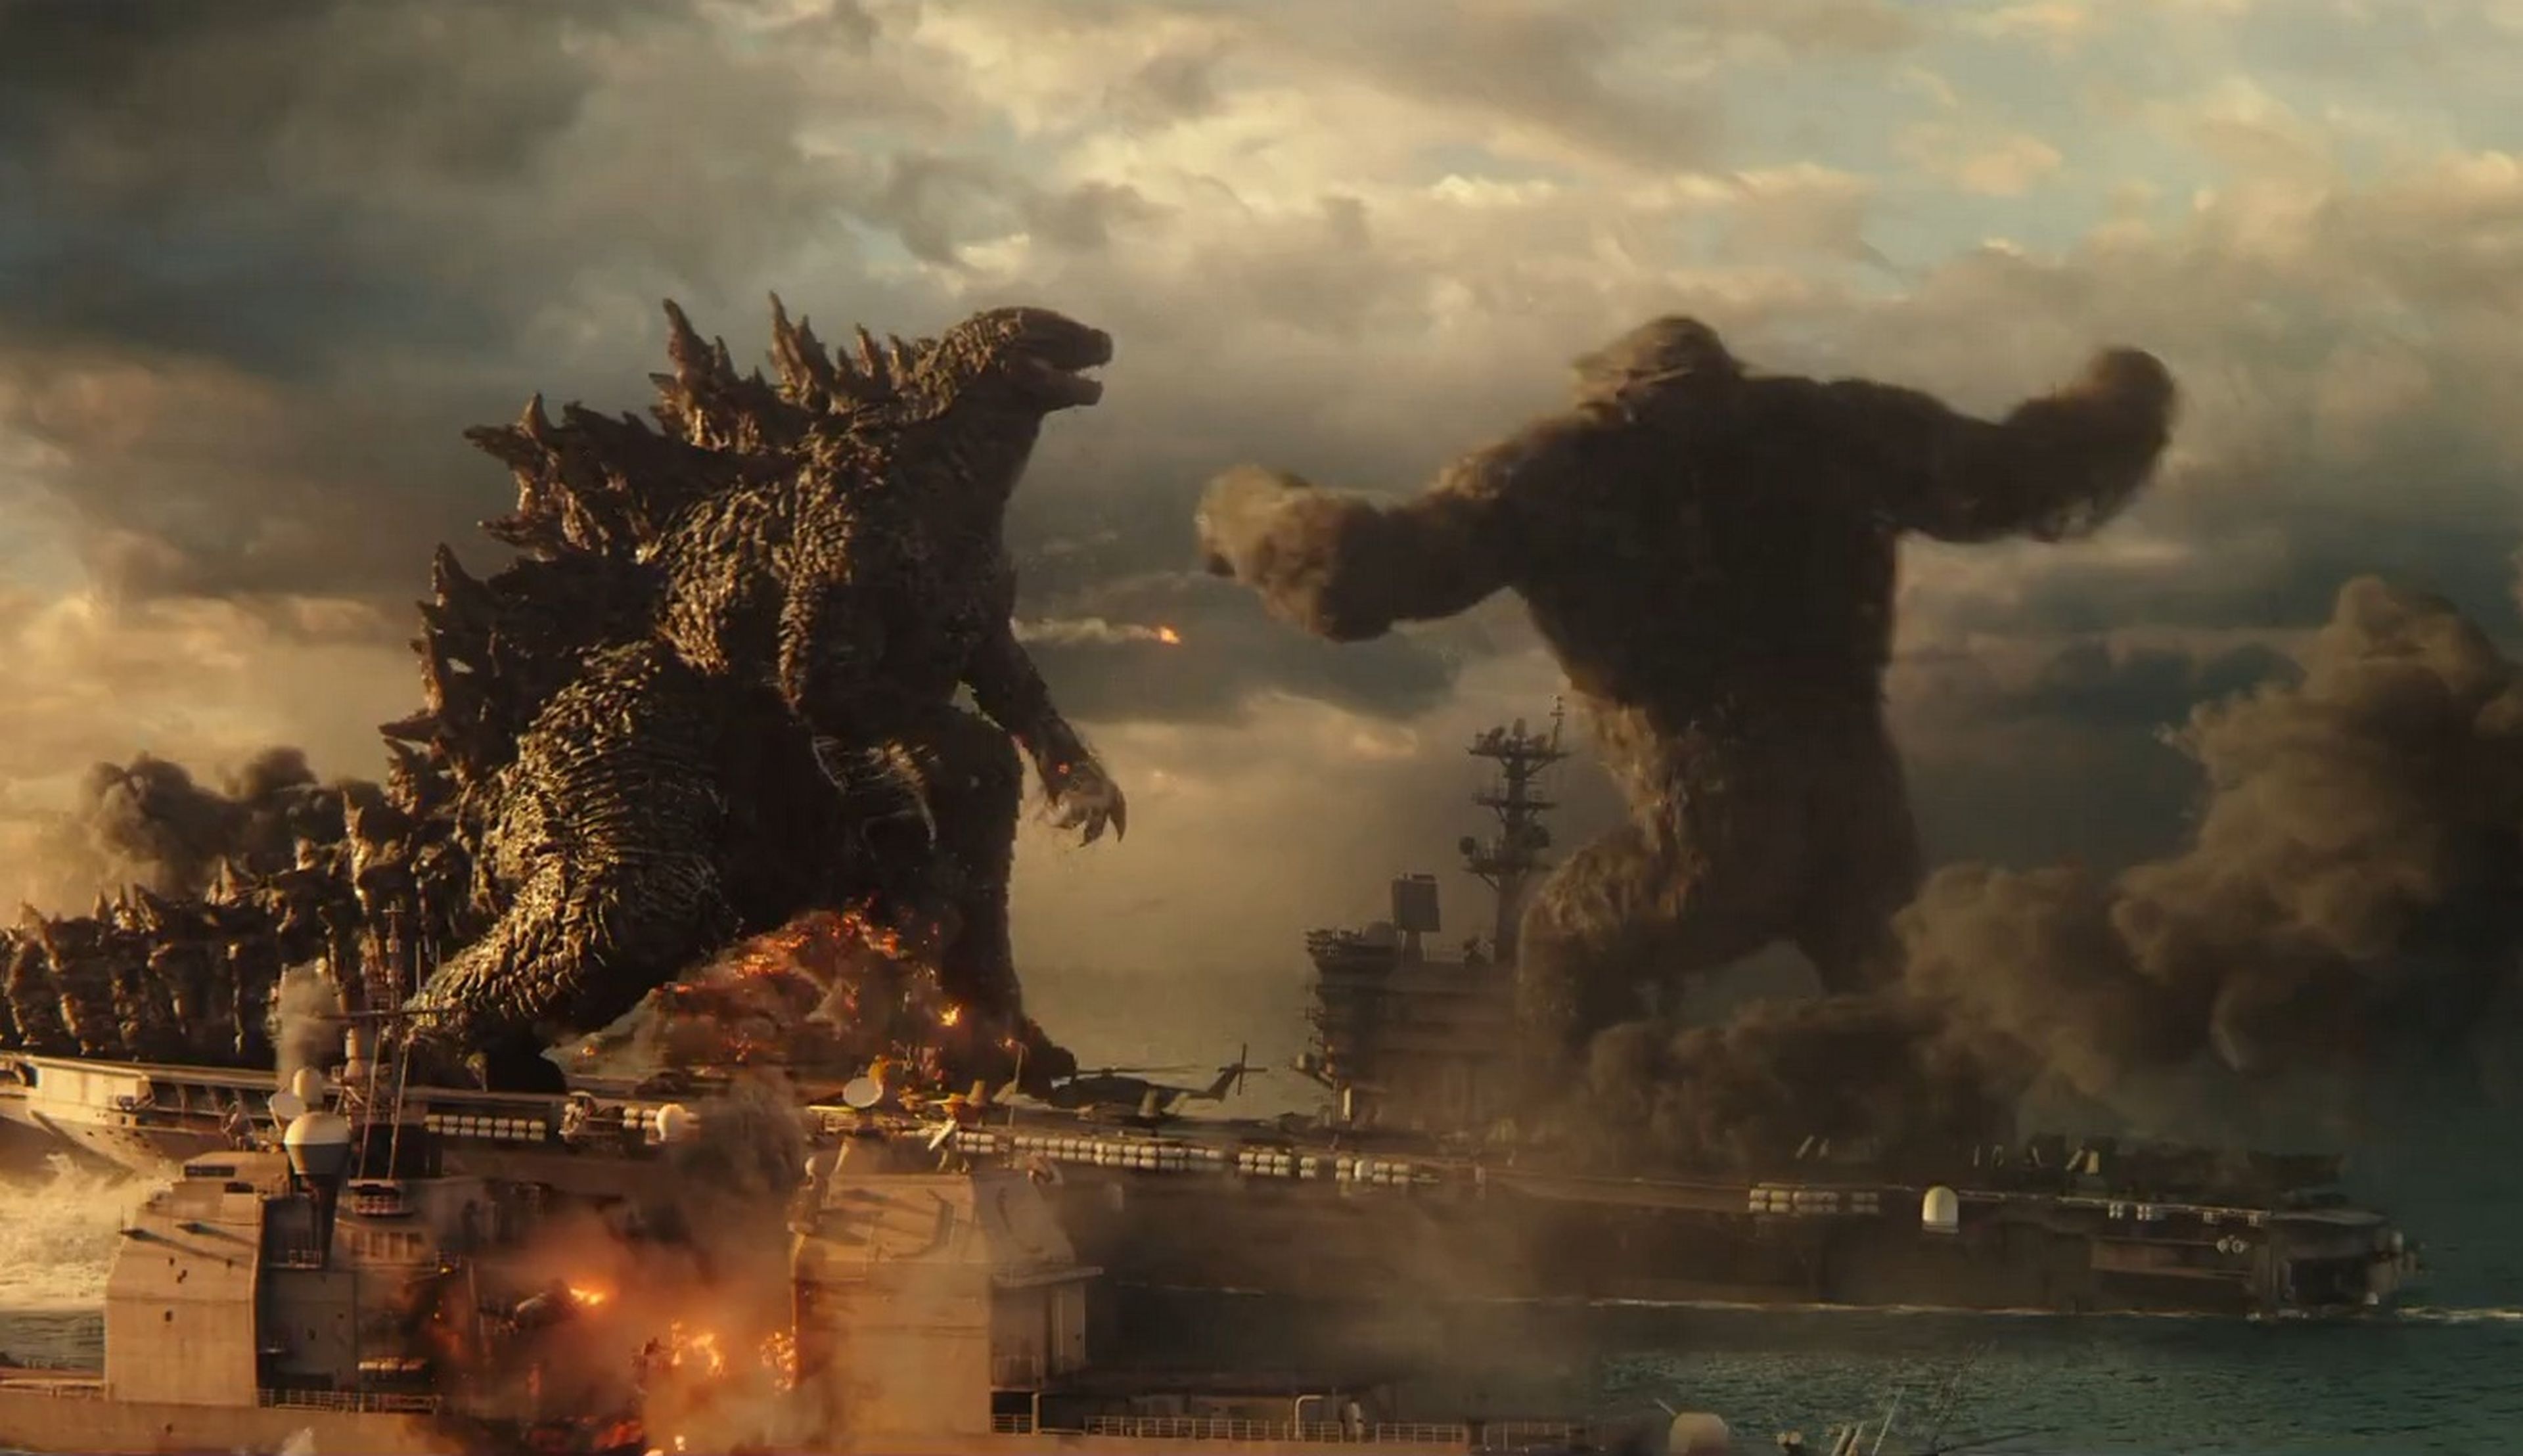 Se estrena el trailer de uno de los estrenos más esperados del año, Godzilla vs. Kong